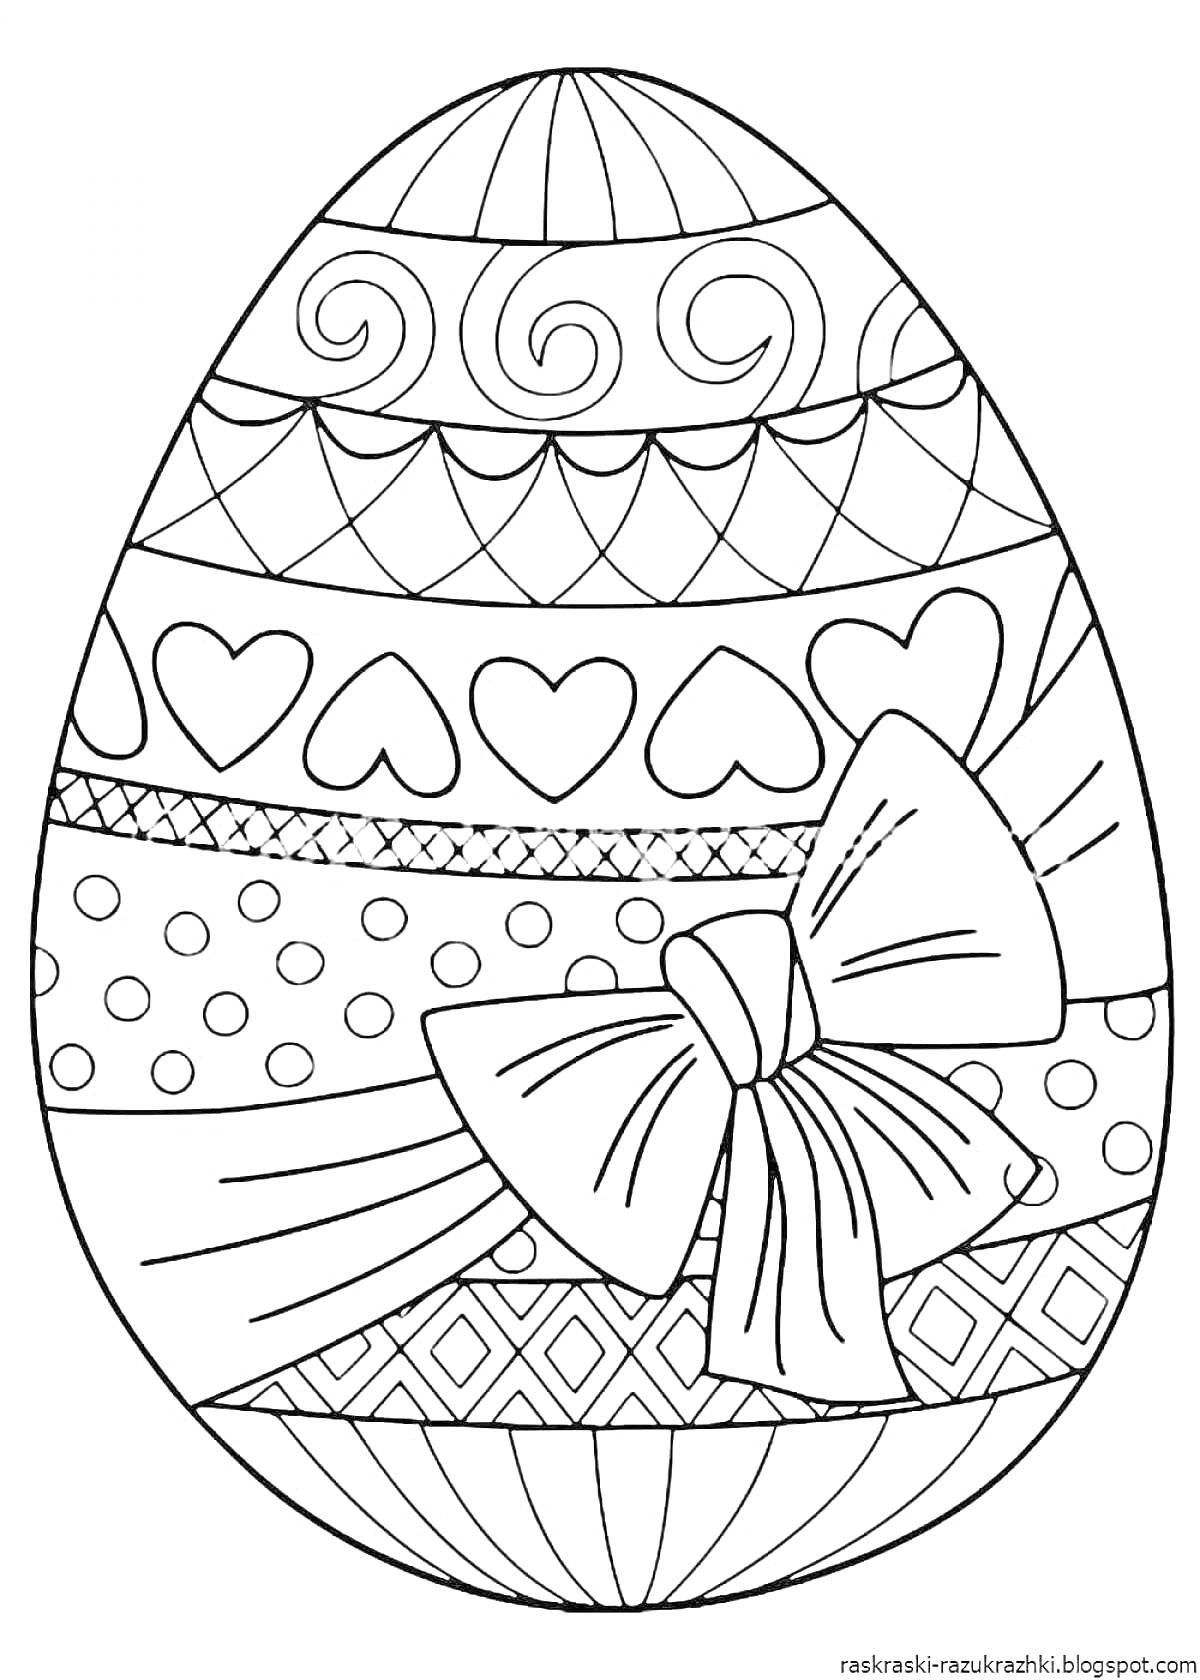 Раскраска Пасхальное яйцо с декоративными узорами, сердечками и бантом